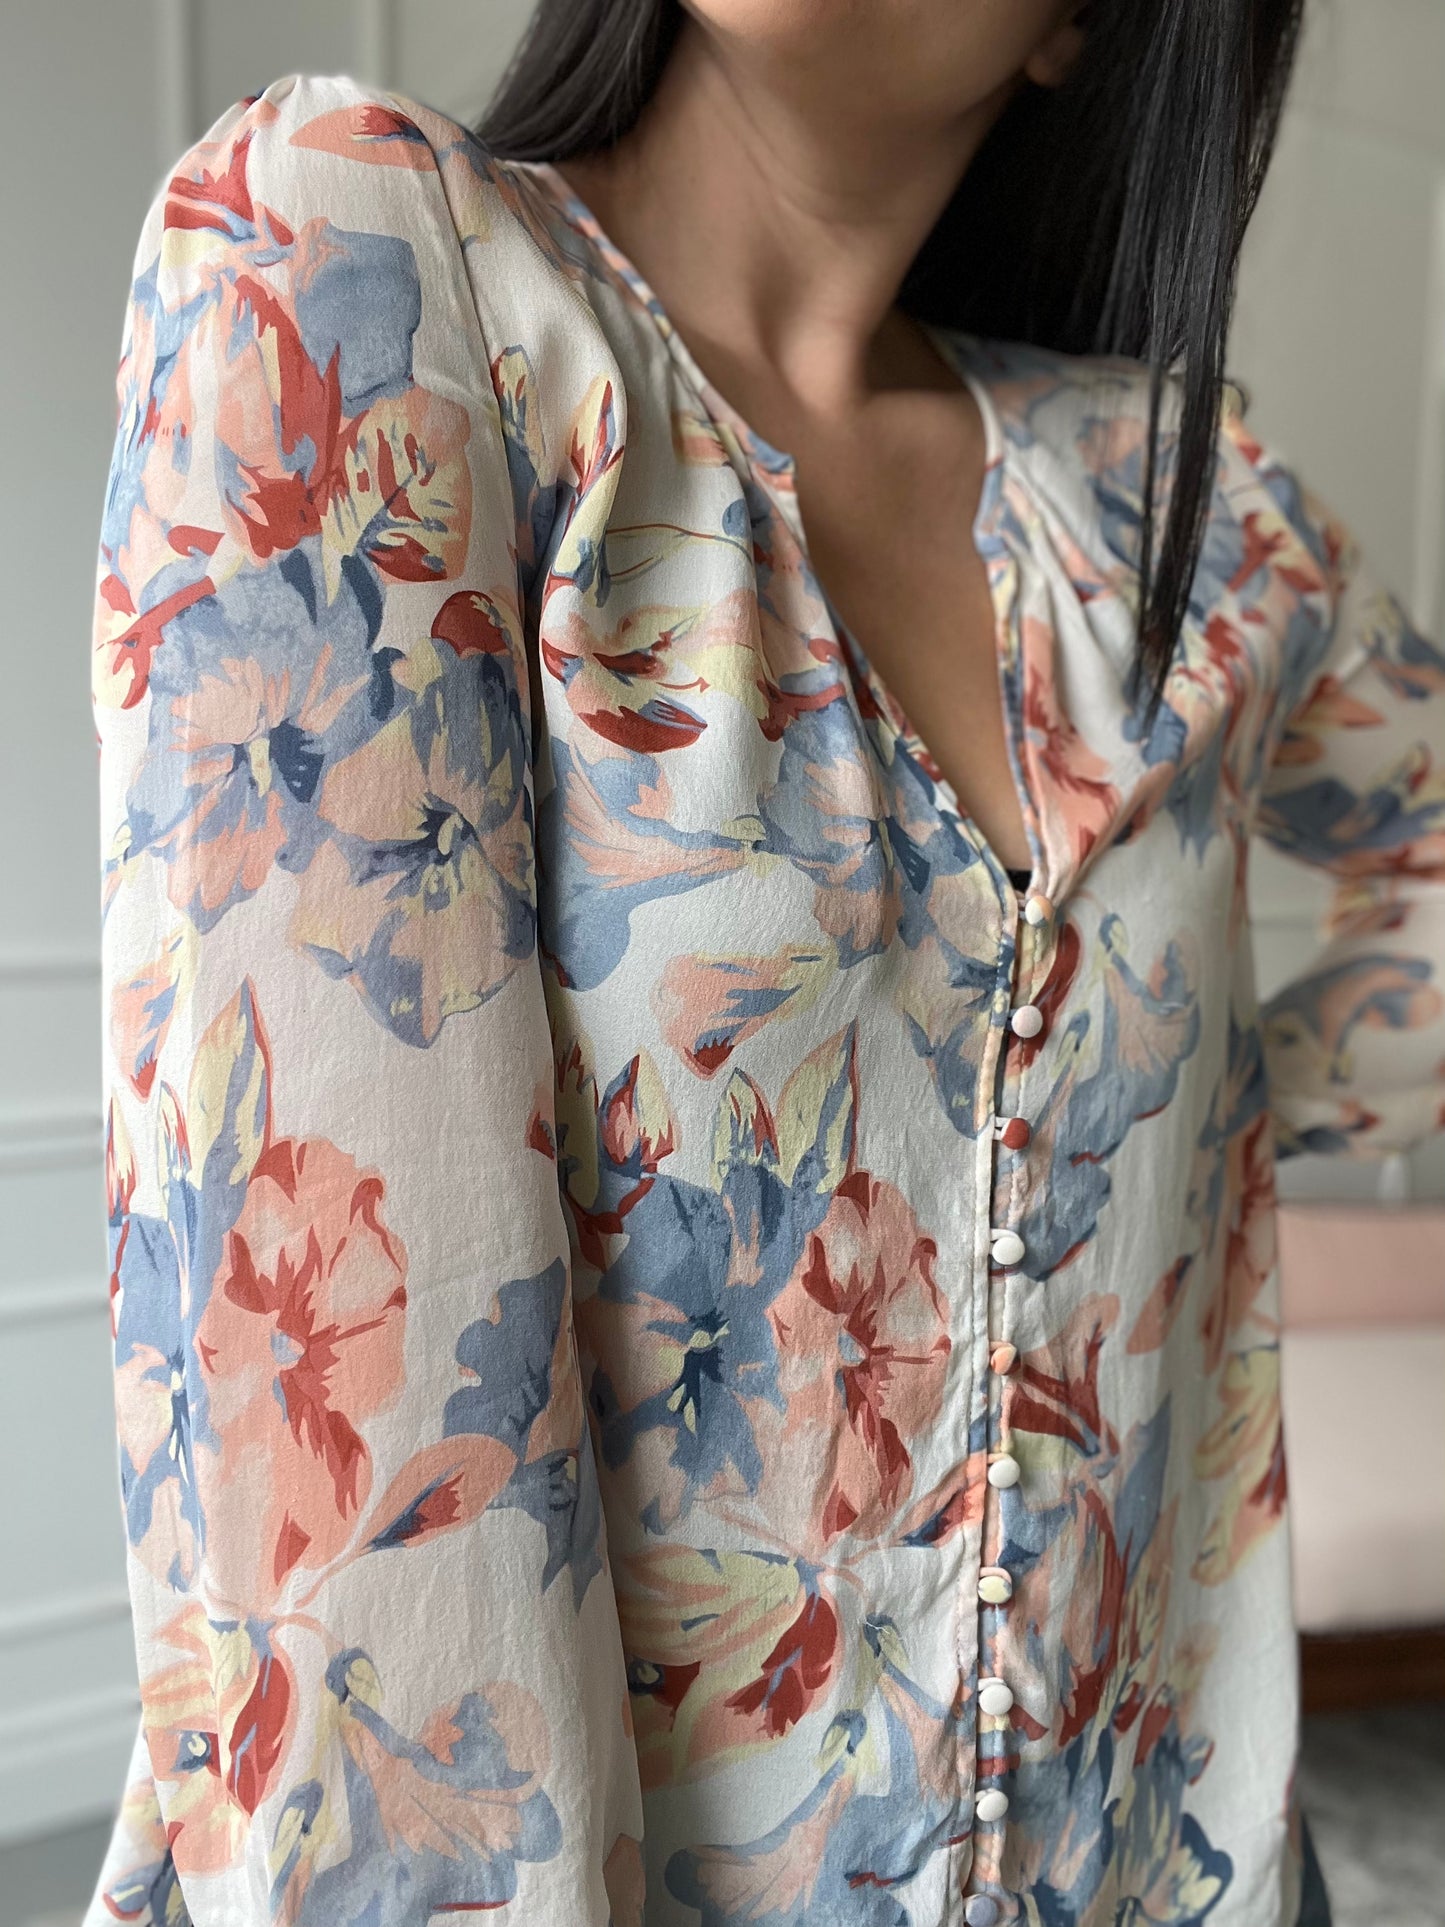 Romantic Floral Silk Top - Size L